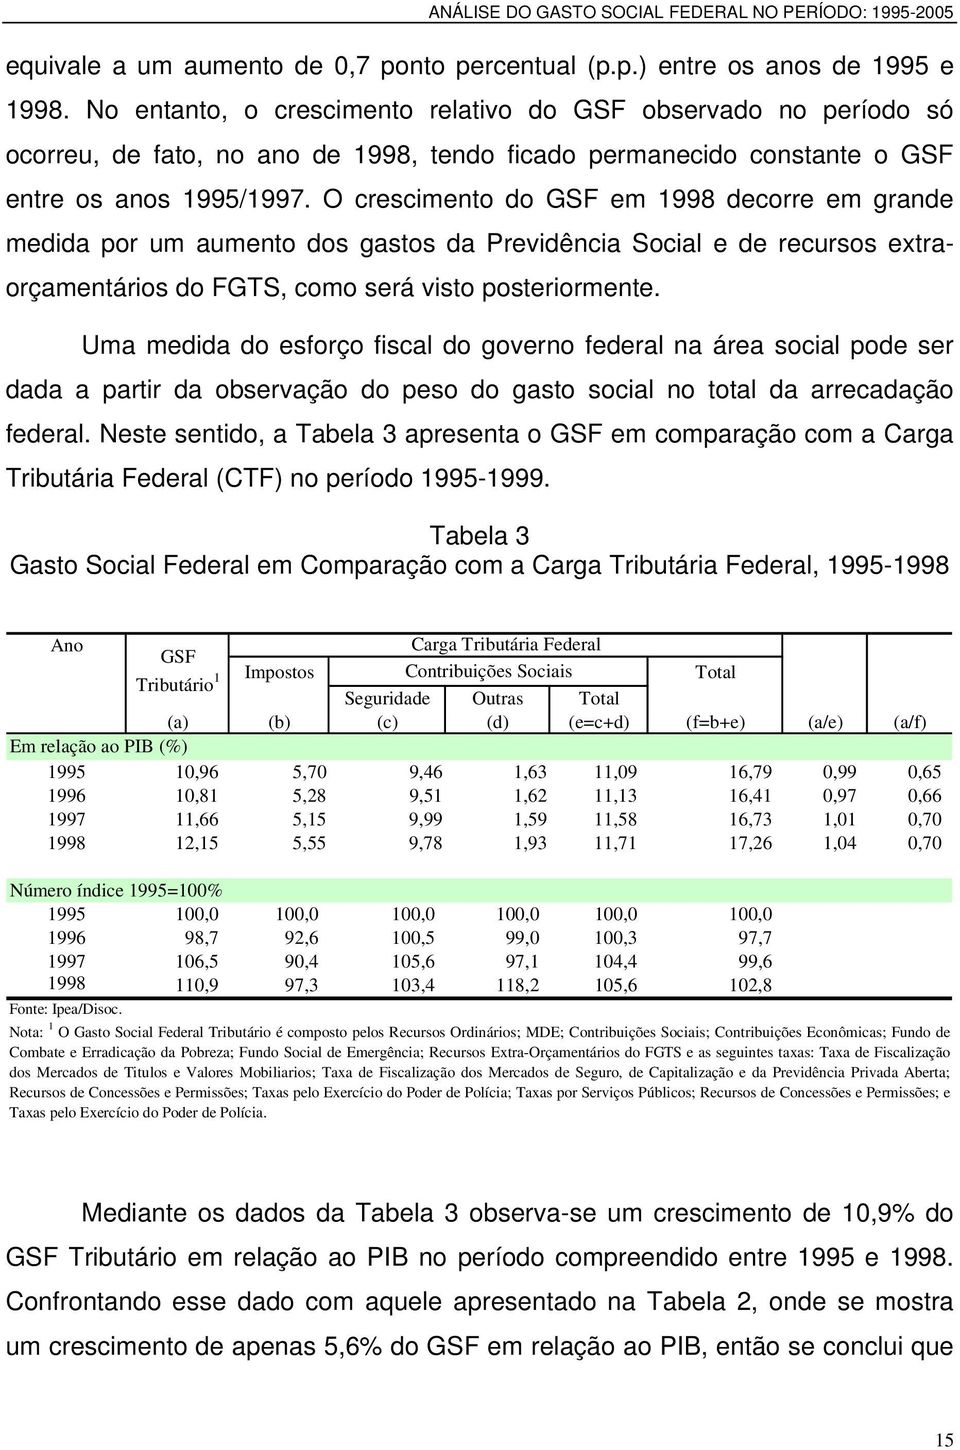 O crescimento do GSF em 1998 decorre em grande medida por um aumento dos gastos da Previdência Social e de recursos extraorçamentários do FGTS, como será visto posteriormente.